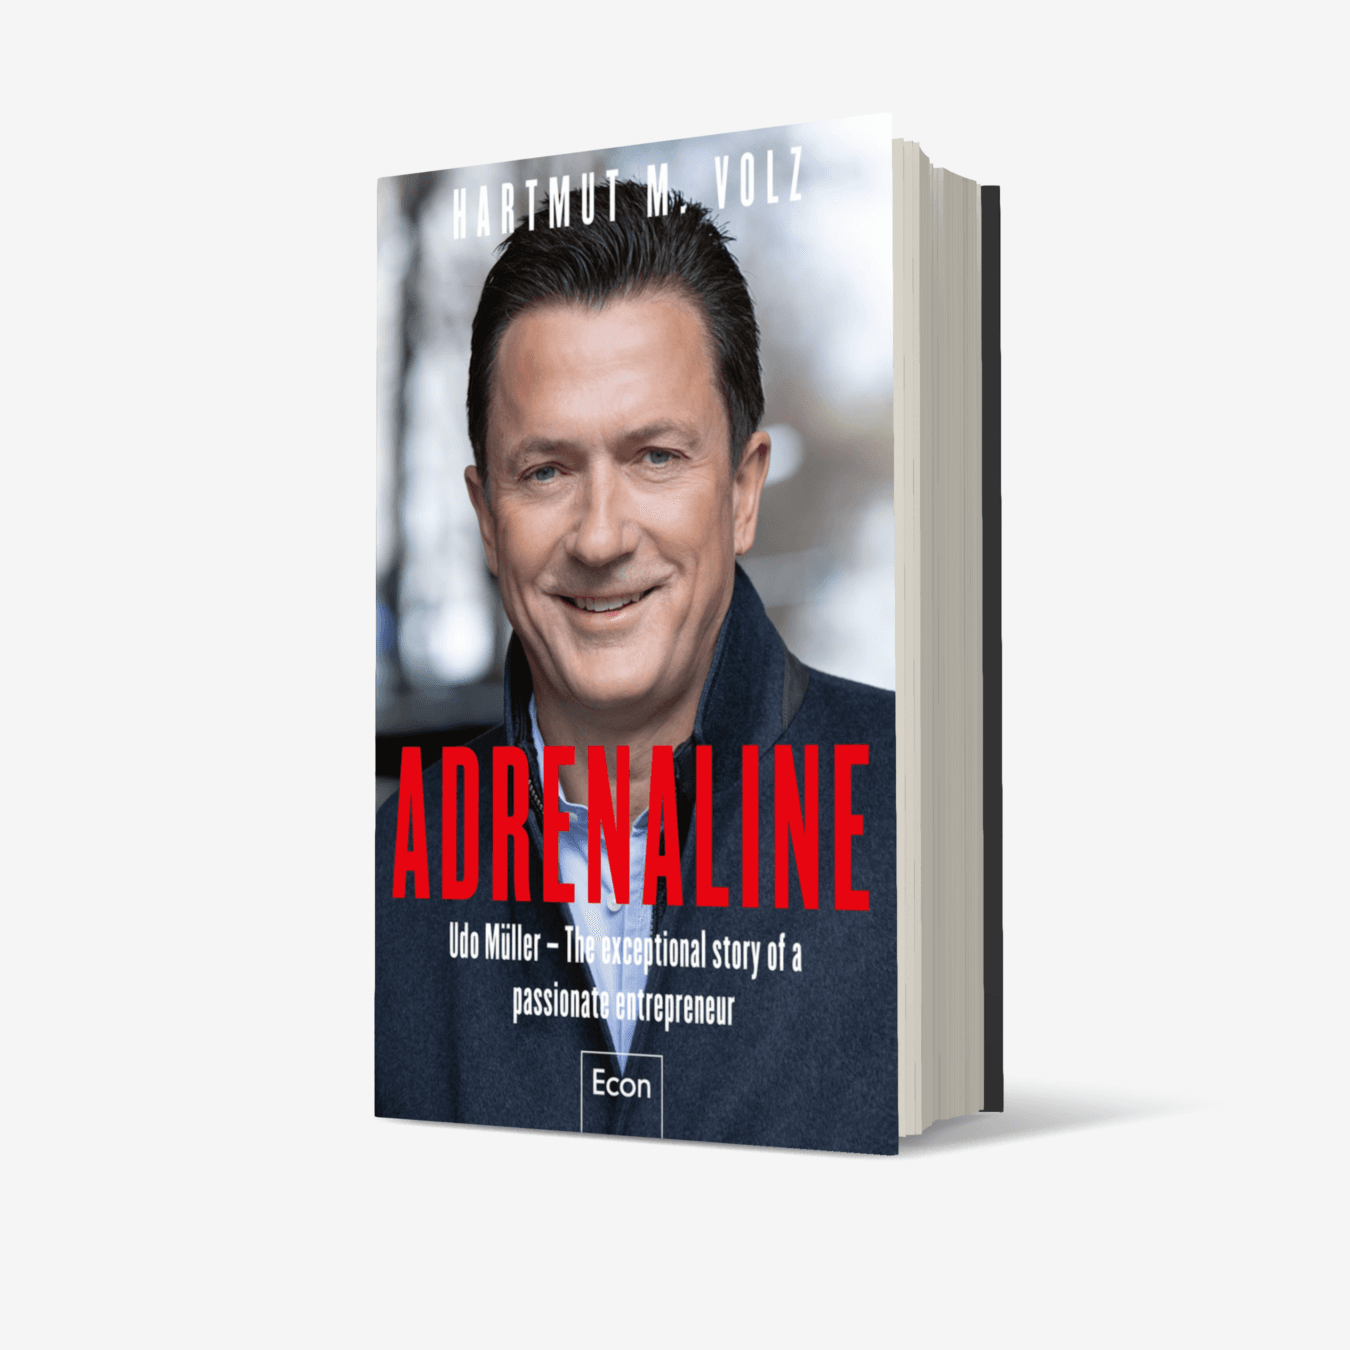 Buchcover von Adrenaline